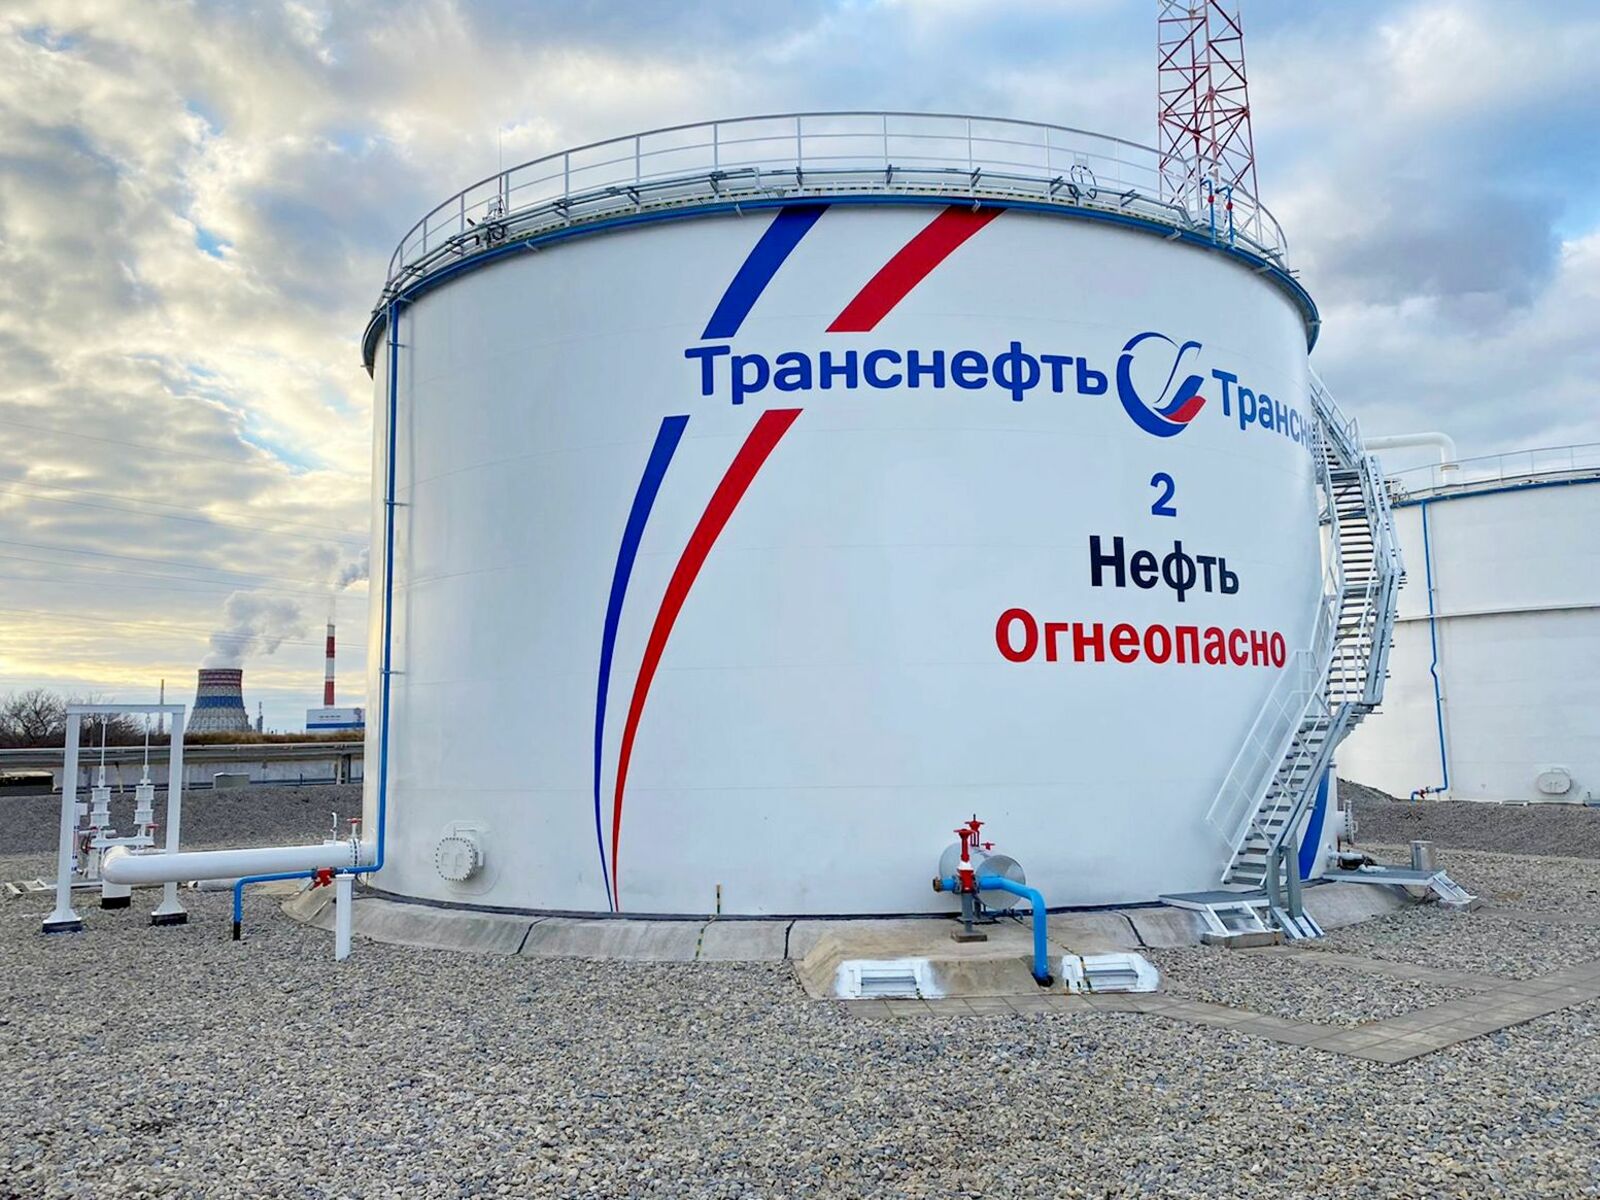 «Транснефть – Урал» повышает надежность резервуарных парков